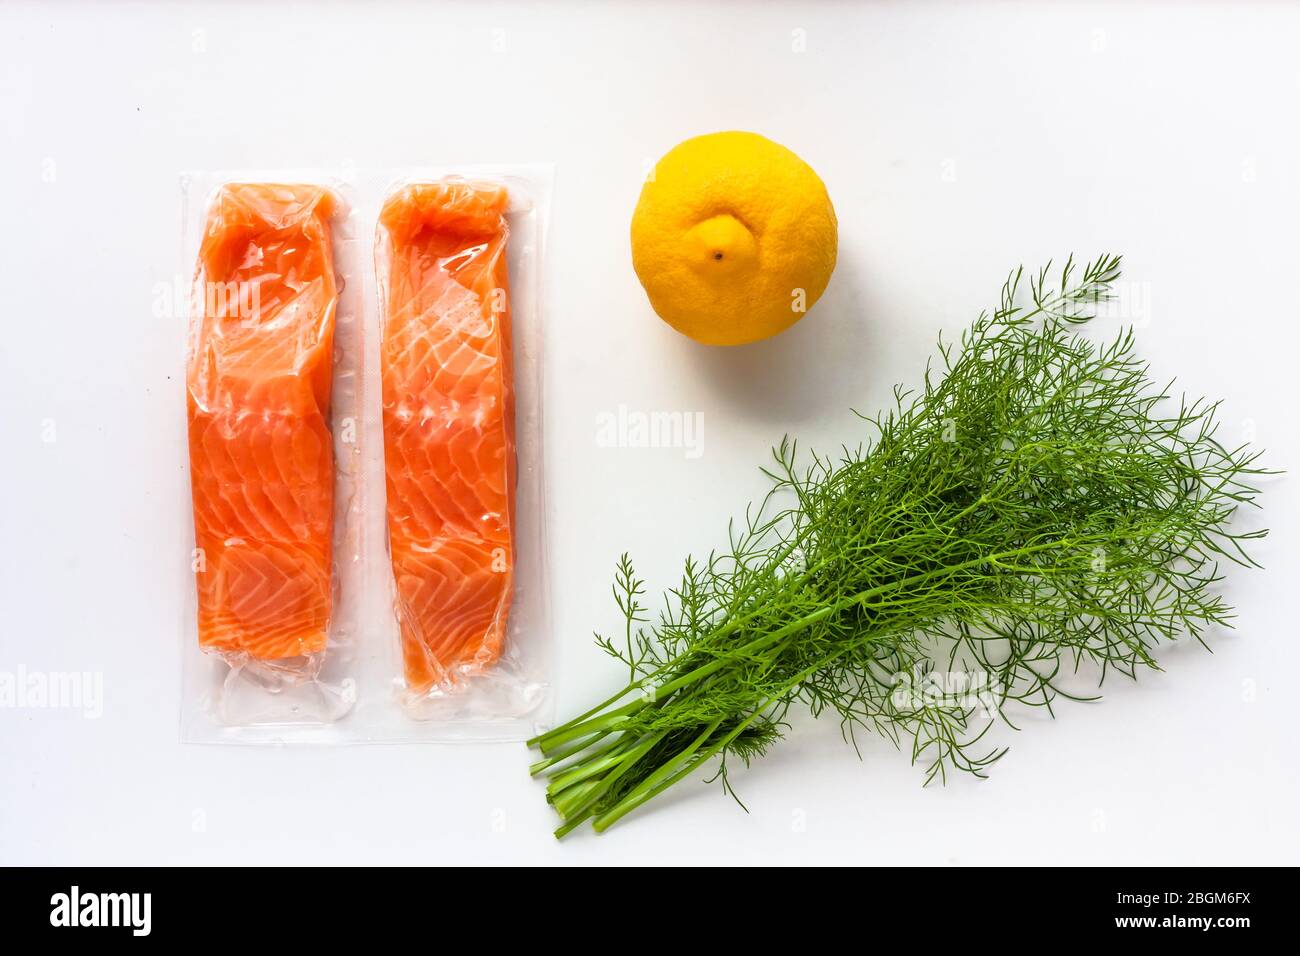 Filetti di pesce rosso o salmone in confezione sottovuoto su fondo bianco. Ingredienti per la cottura di pesce fresco, limone e aneto. Omega-3 Foto Stock